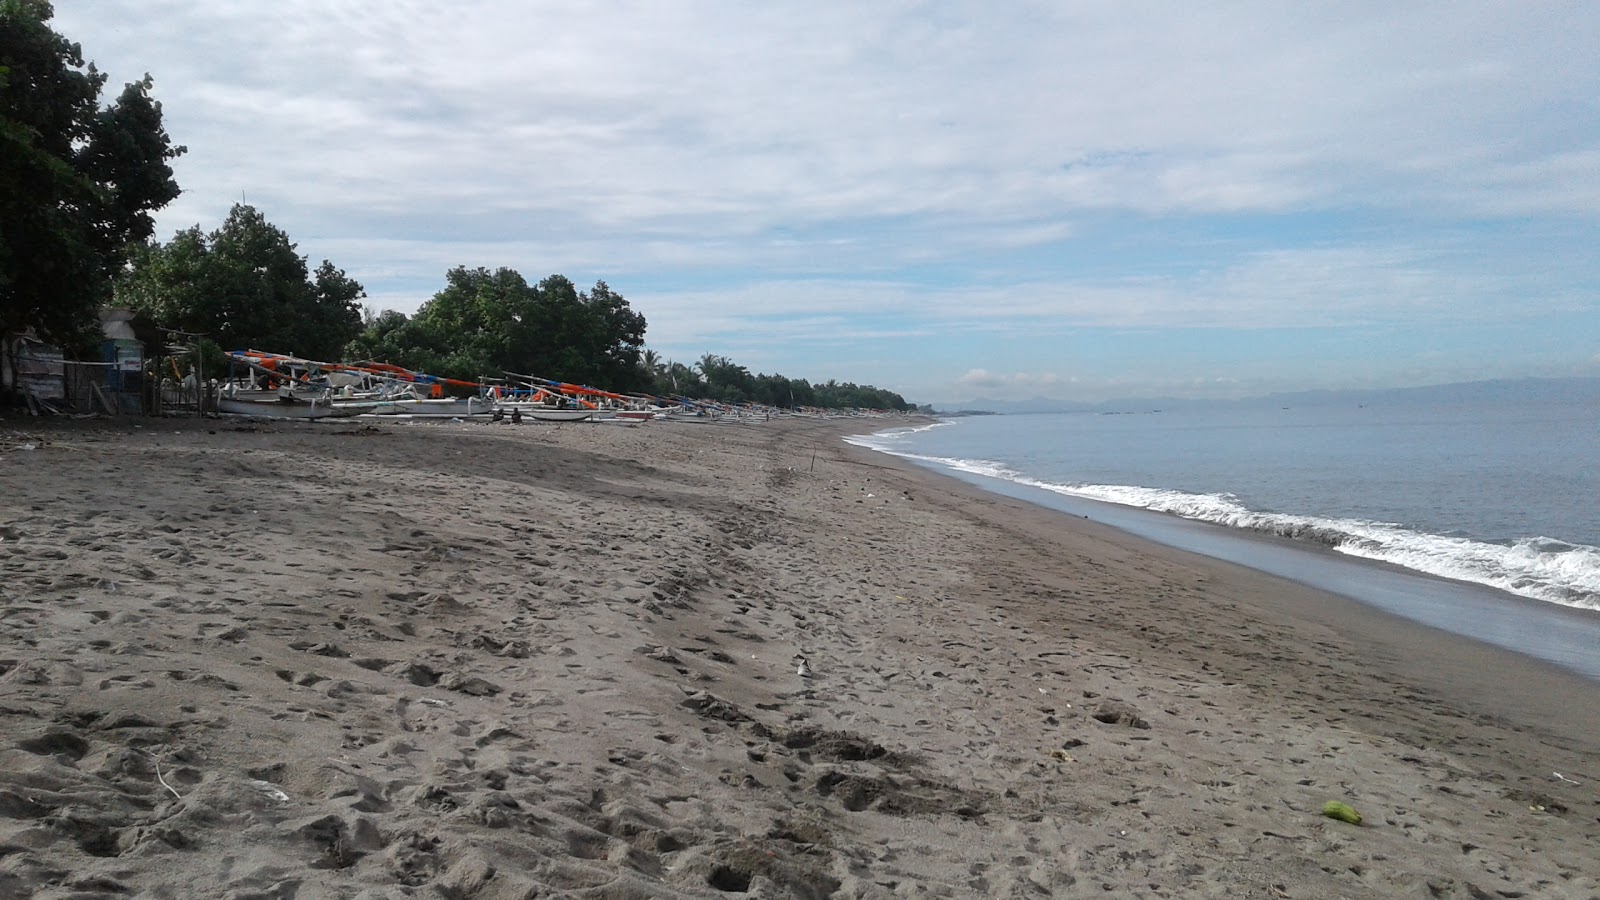 Fotografie cu Montong Beach cu o suprafață de nisip maro